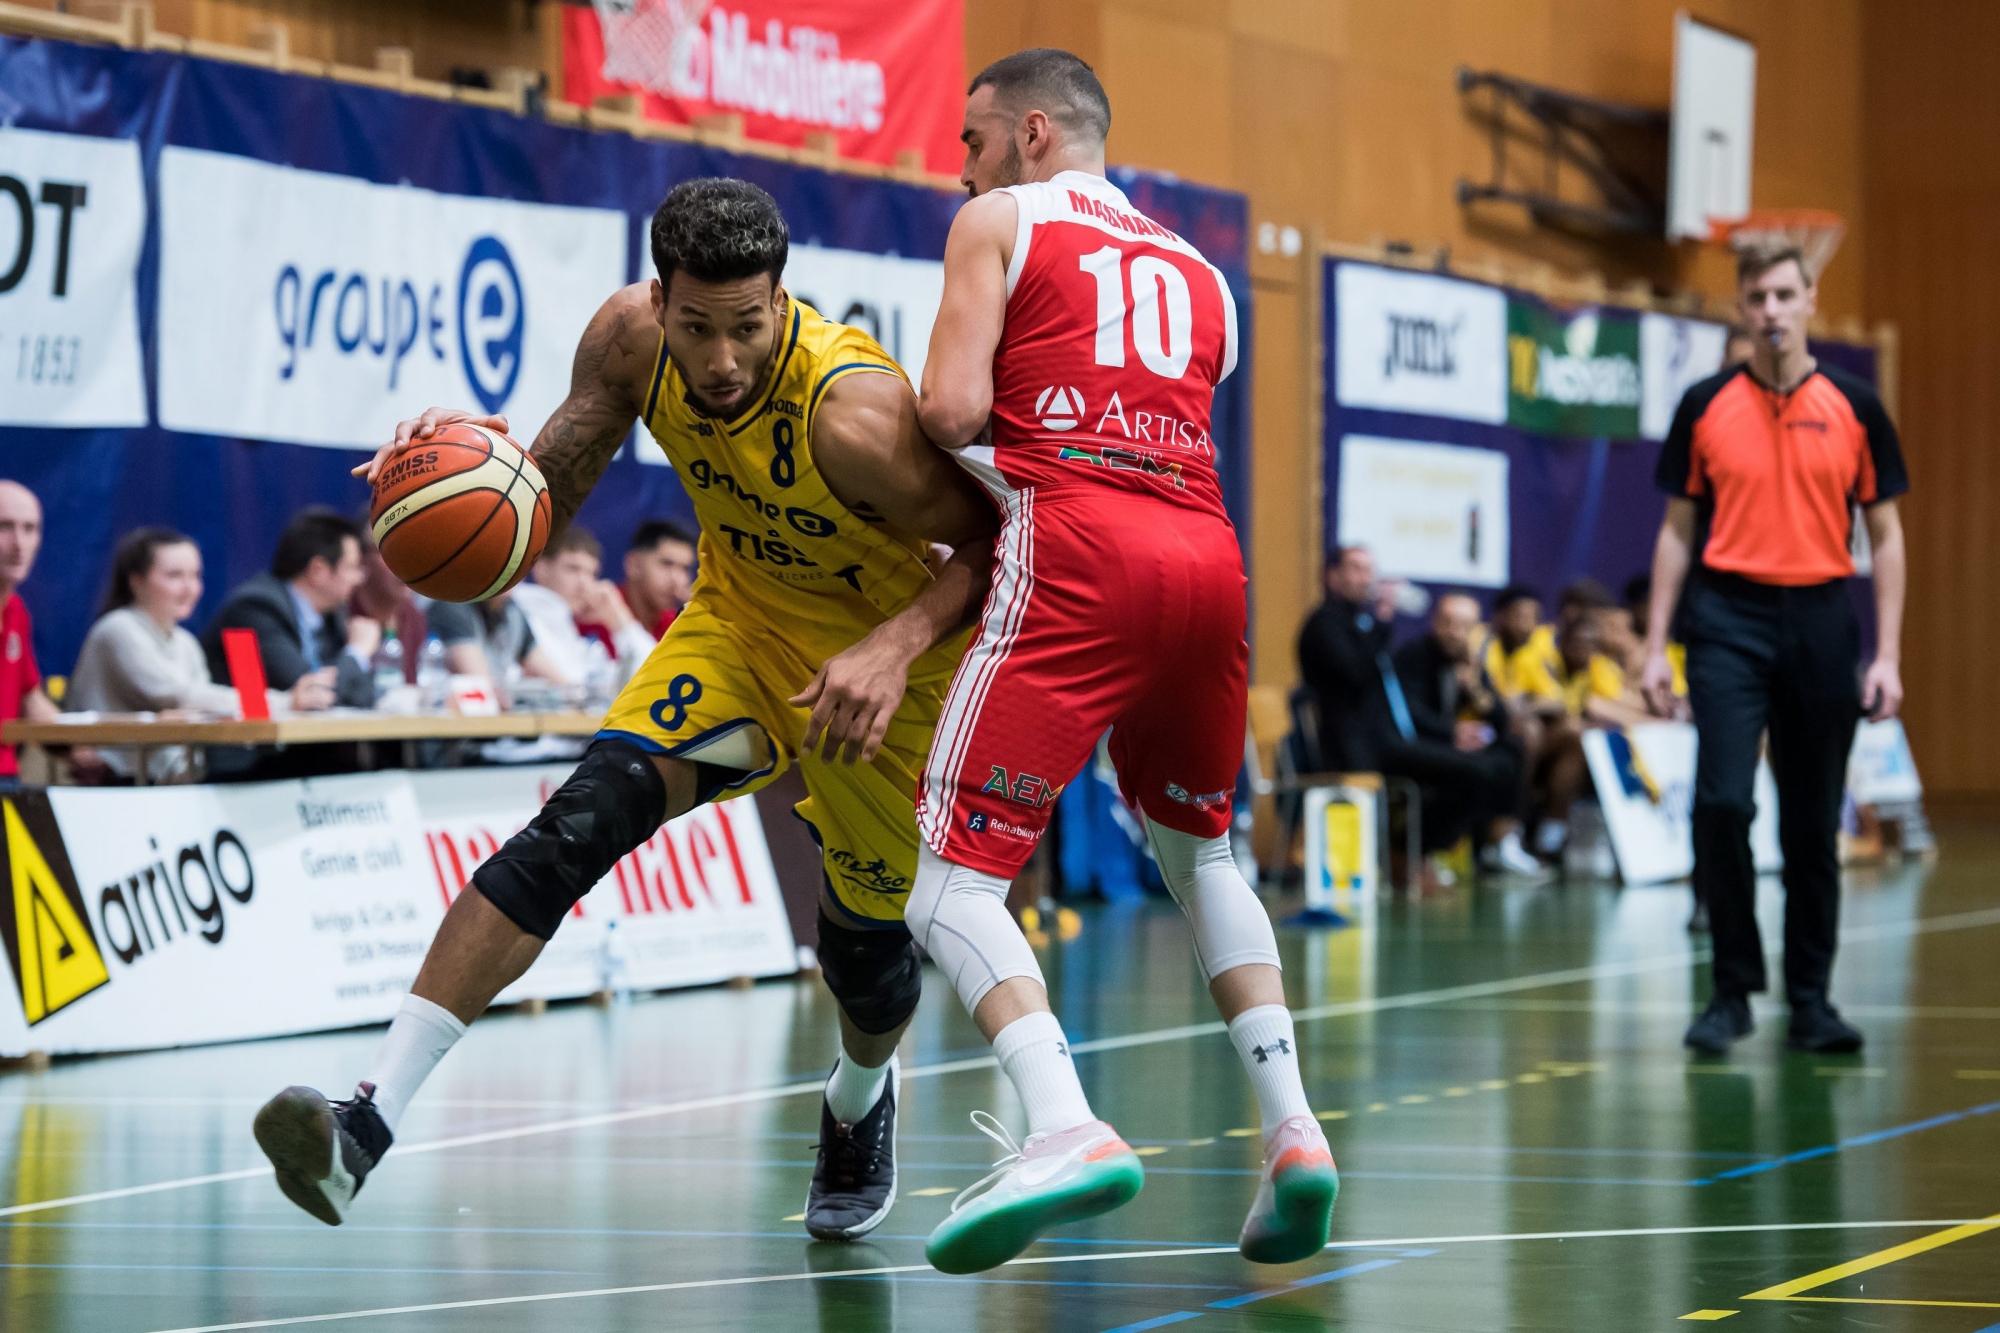 Basketball : Union Neuchatel - Massagno.
En jaune Westher Molteni (8) et en rouge Marco Magnani (10)

Neuchatel, le 12 janvier 2019
Photo : Lucas Vuitel BASKETBALL